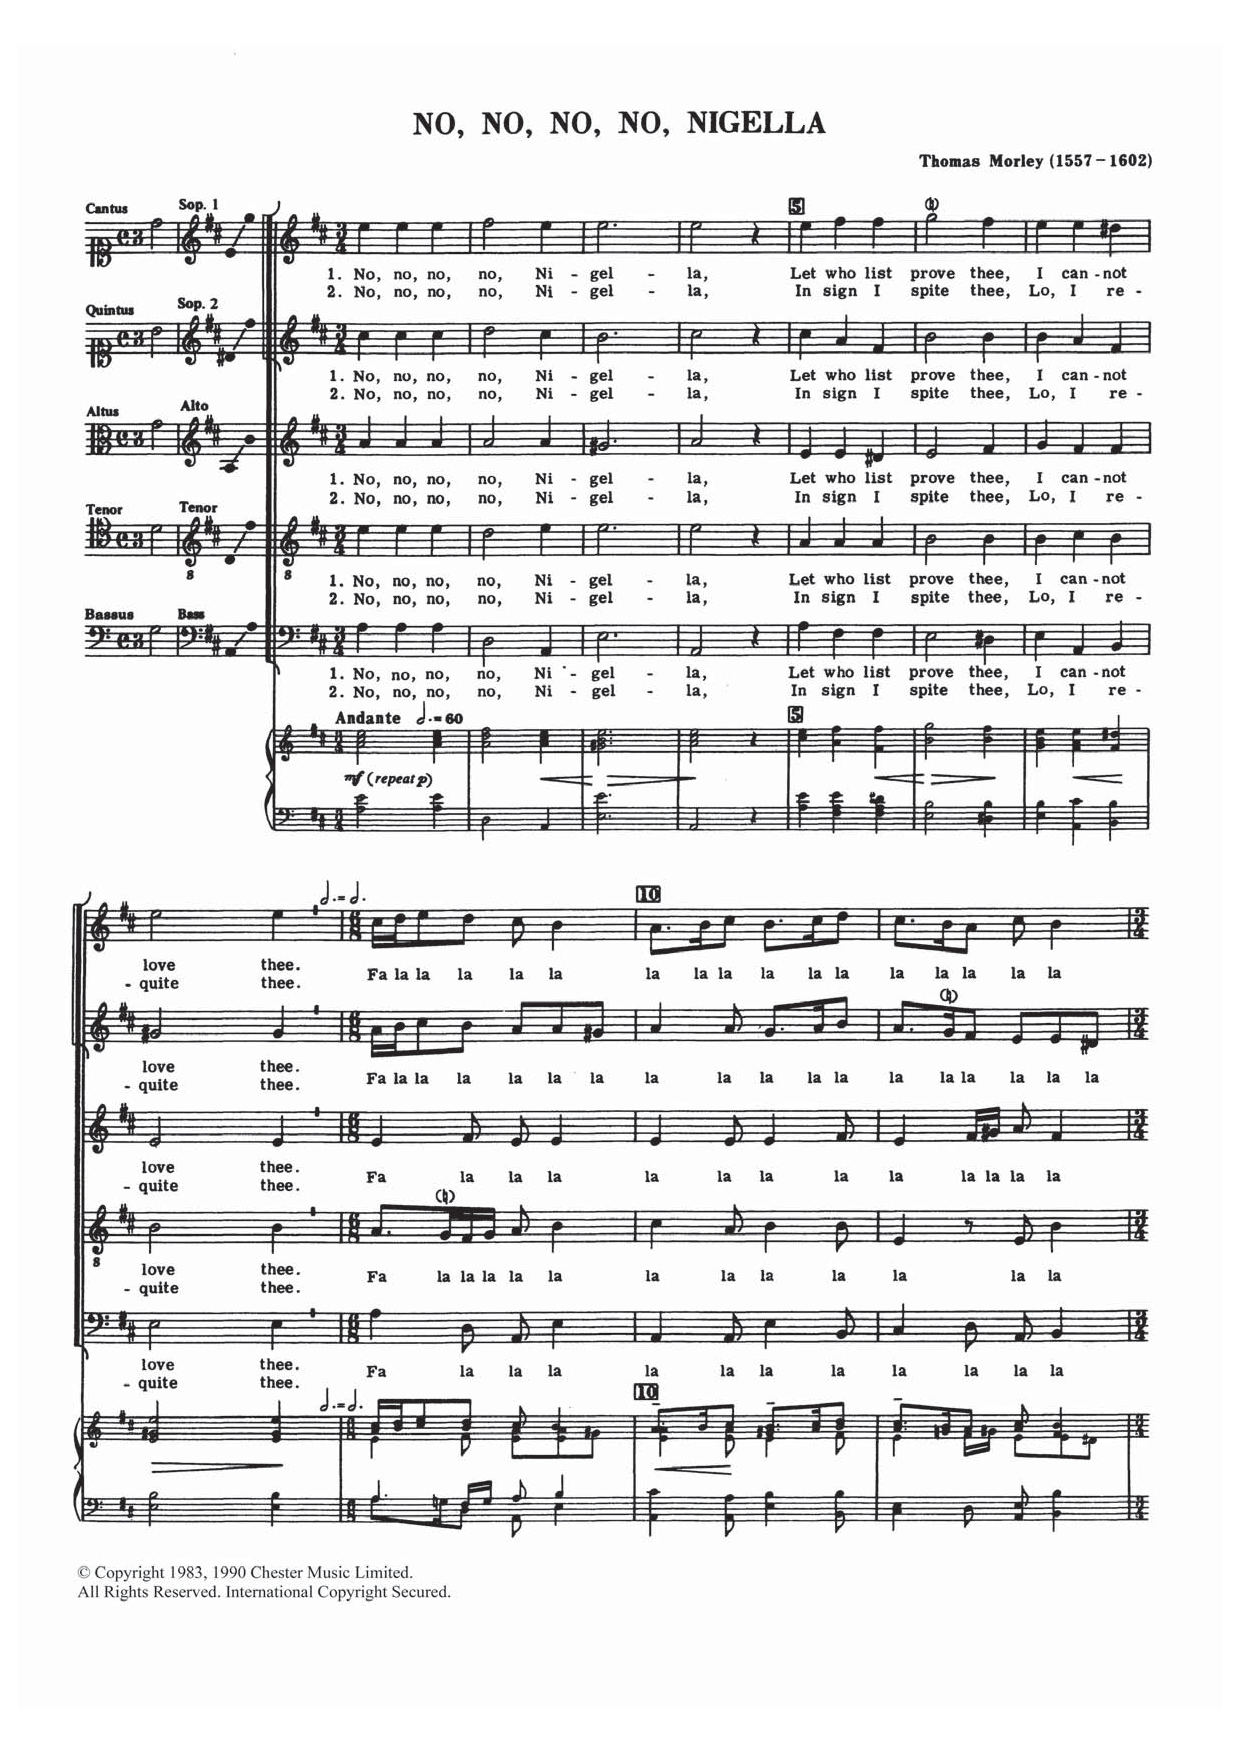 Thomas Morley No, No, No, No, Nigella Sheet Music Notes & Chords for Choir - Download or Print PDF